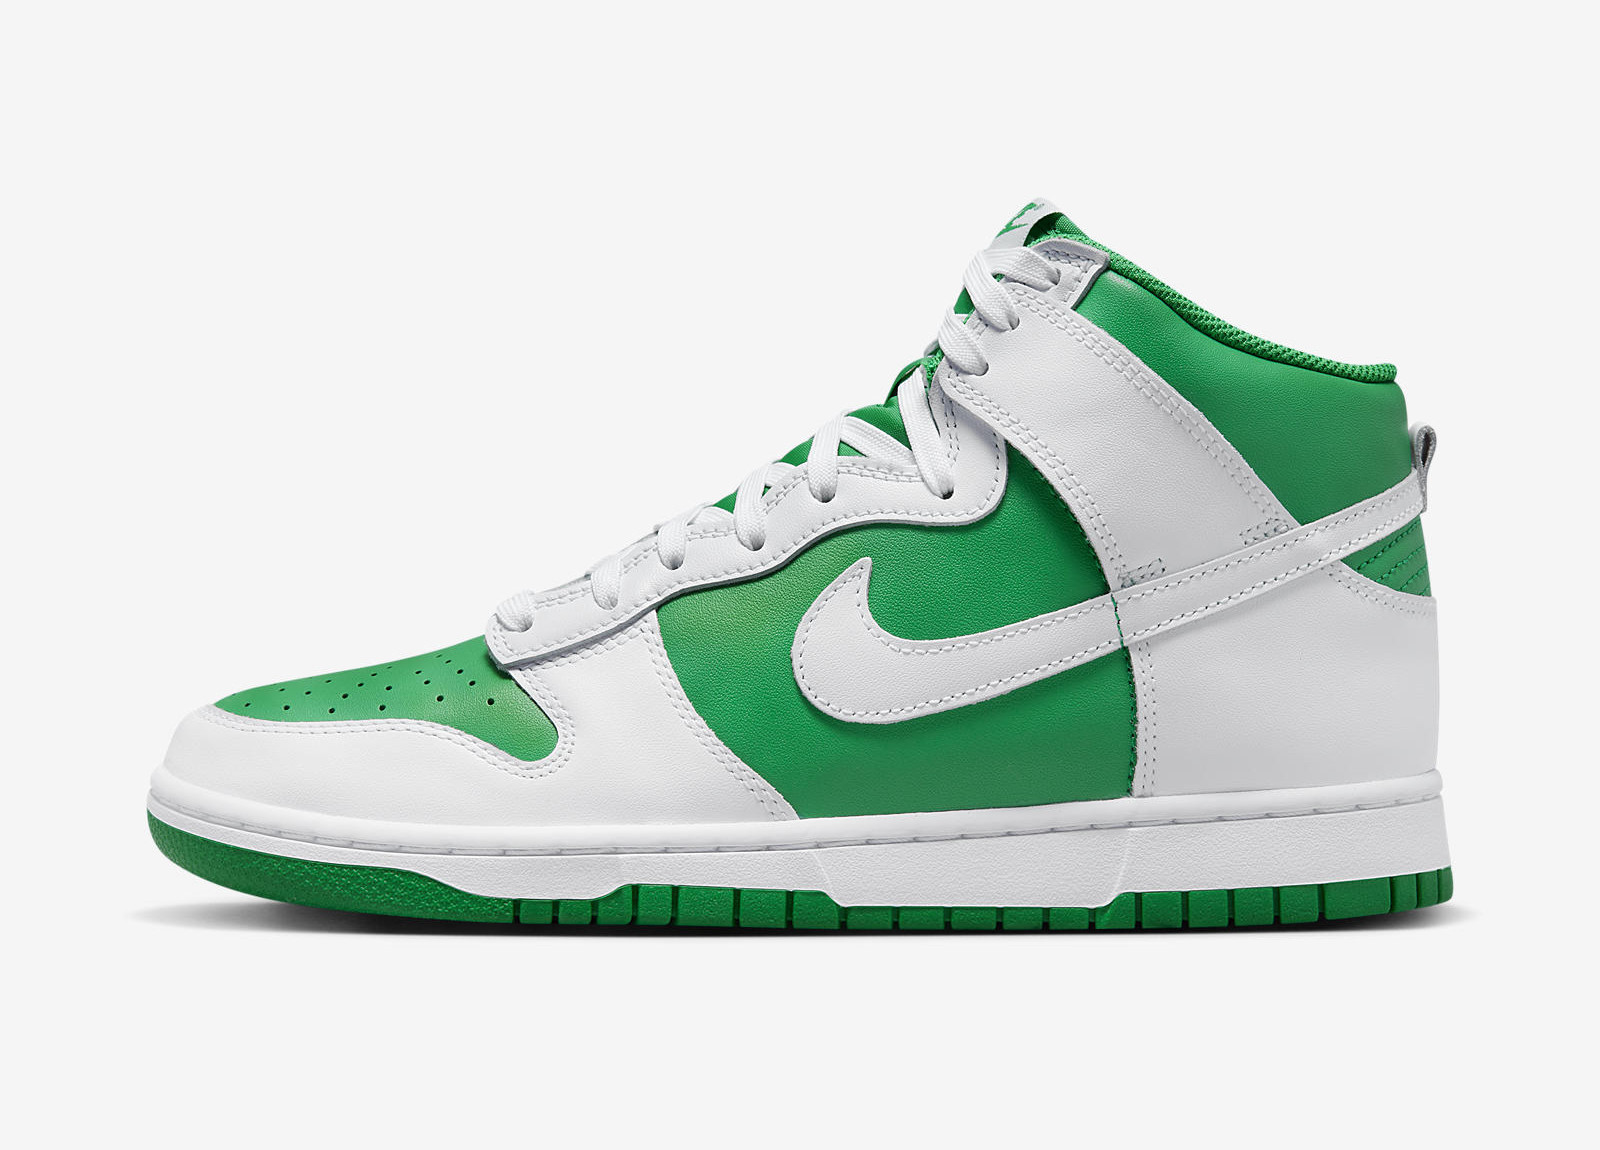 Nike Dunk High
Green / White